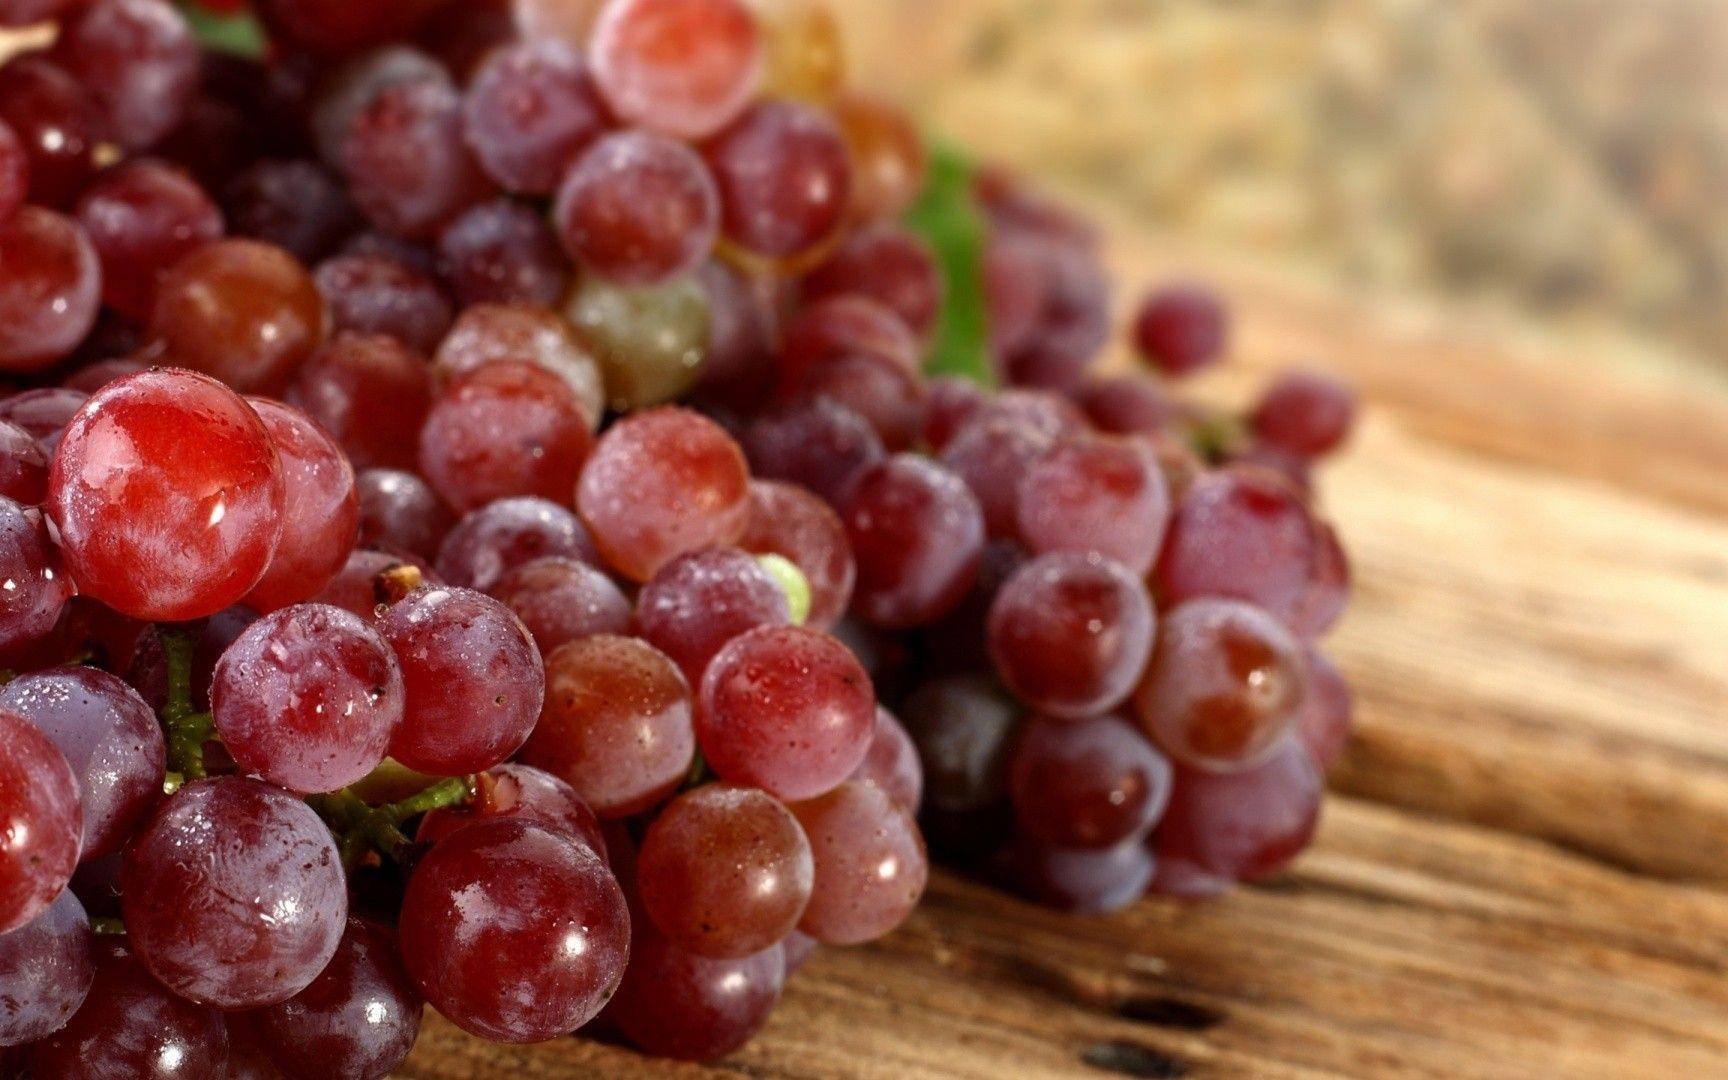 Какой виноград калорийнее: черный или белый